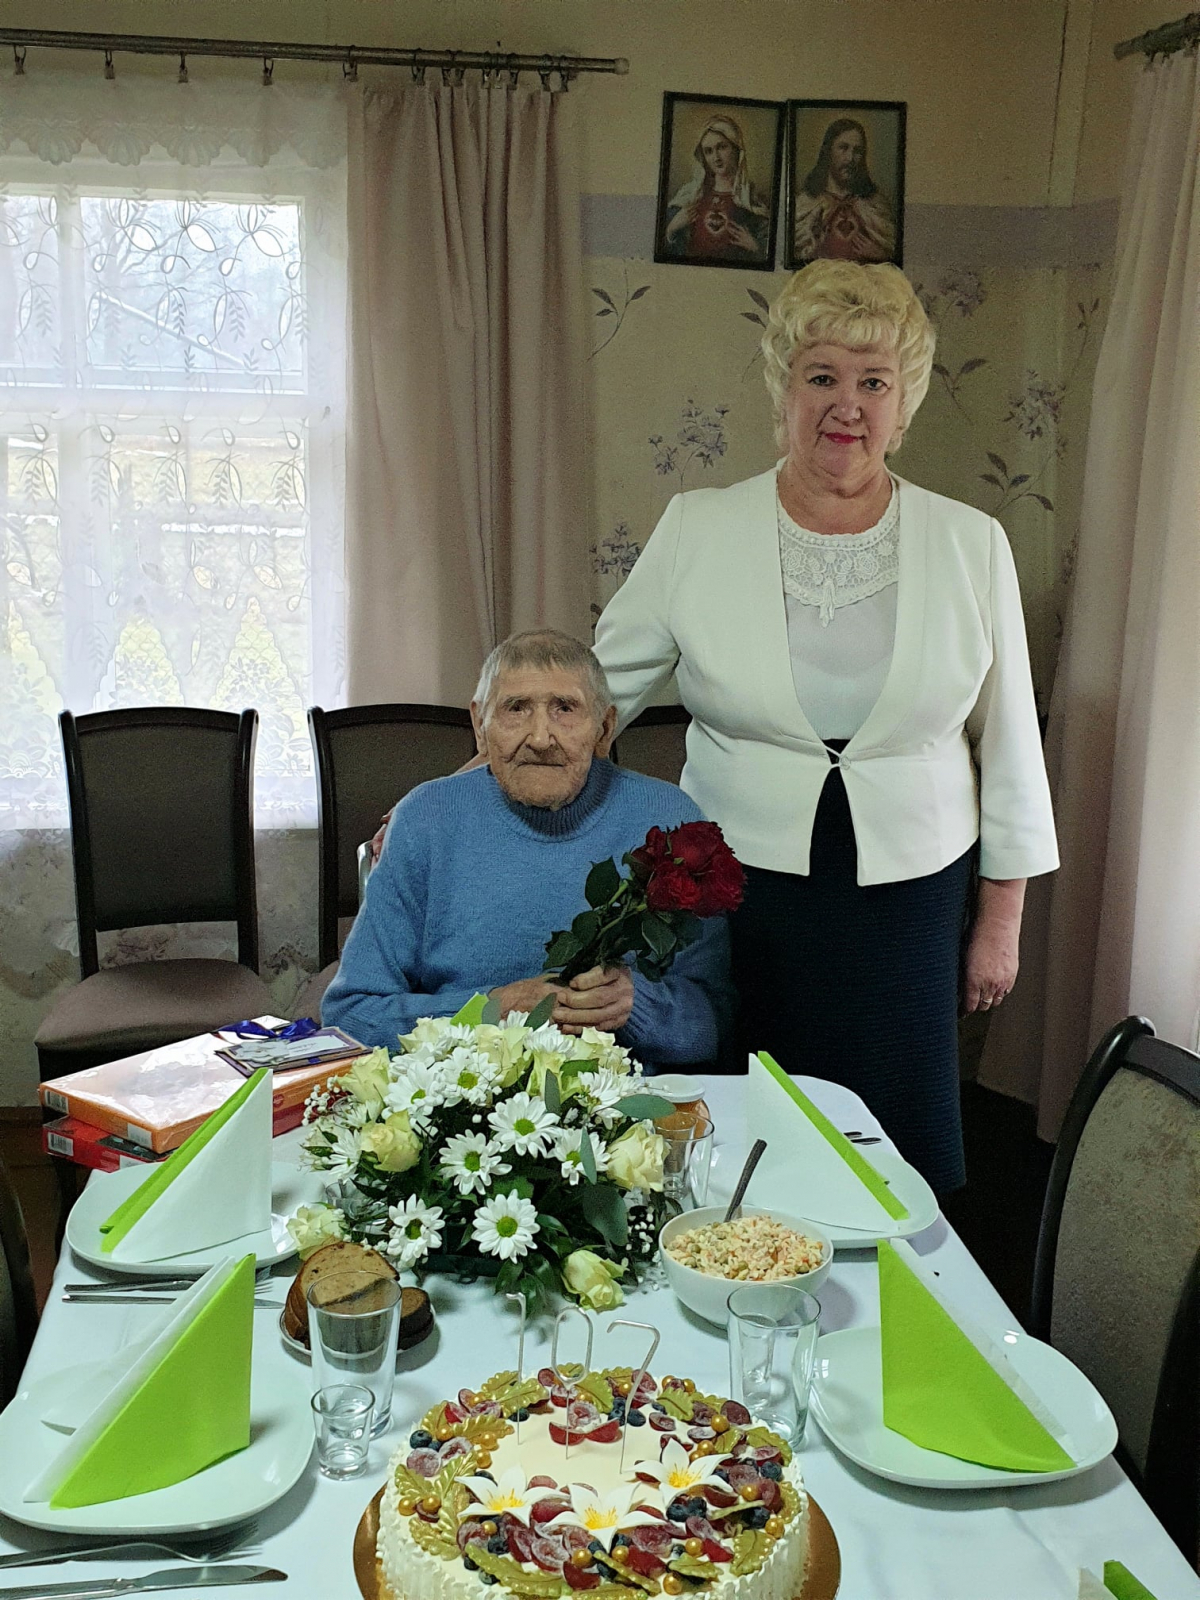 Preiļu novada iedzīvotājs Jāzeps Strods nosvinējis 107. dzimšanas dienu